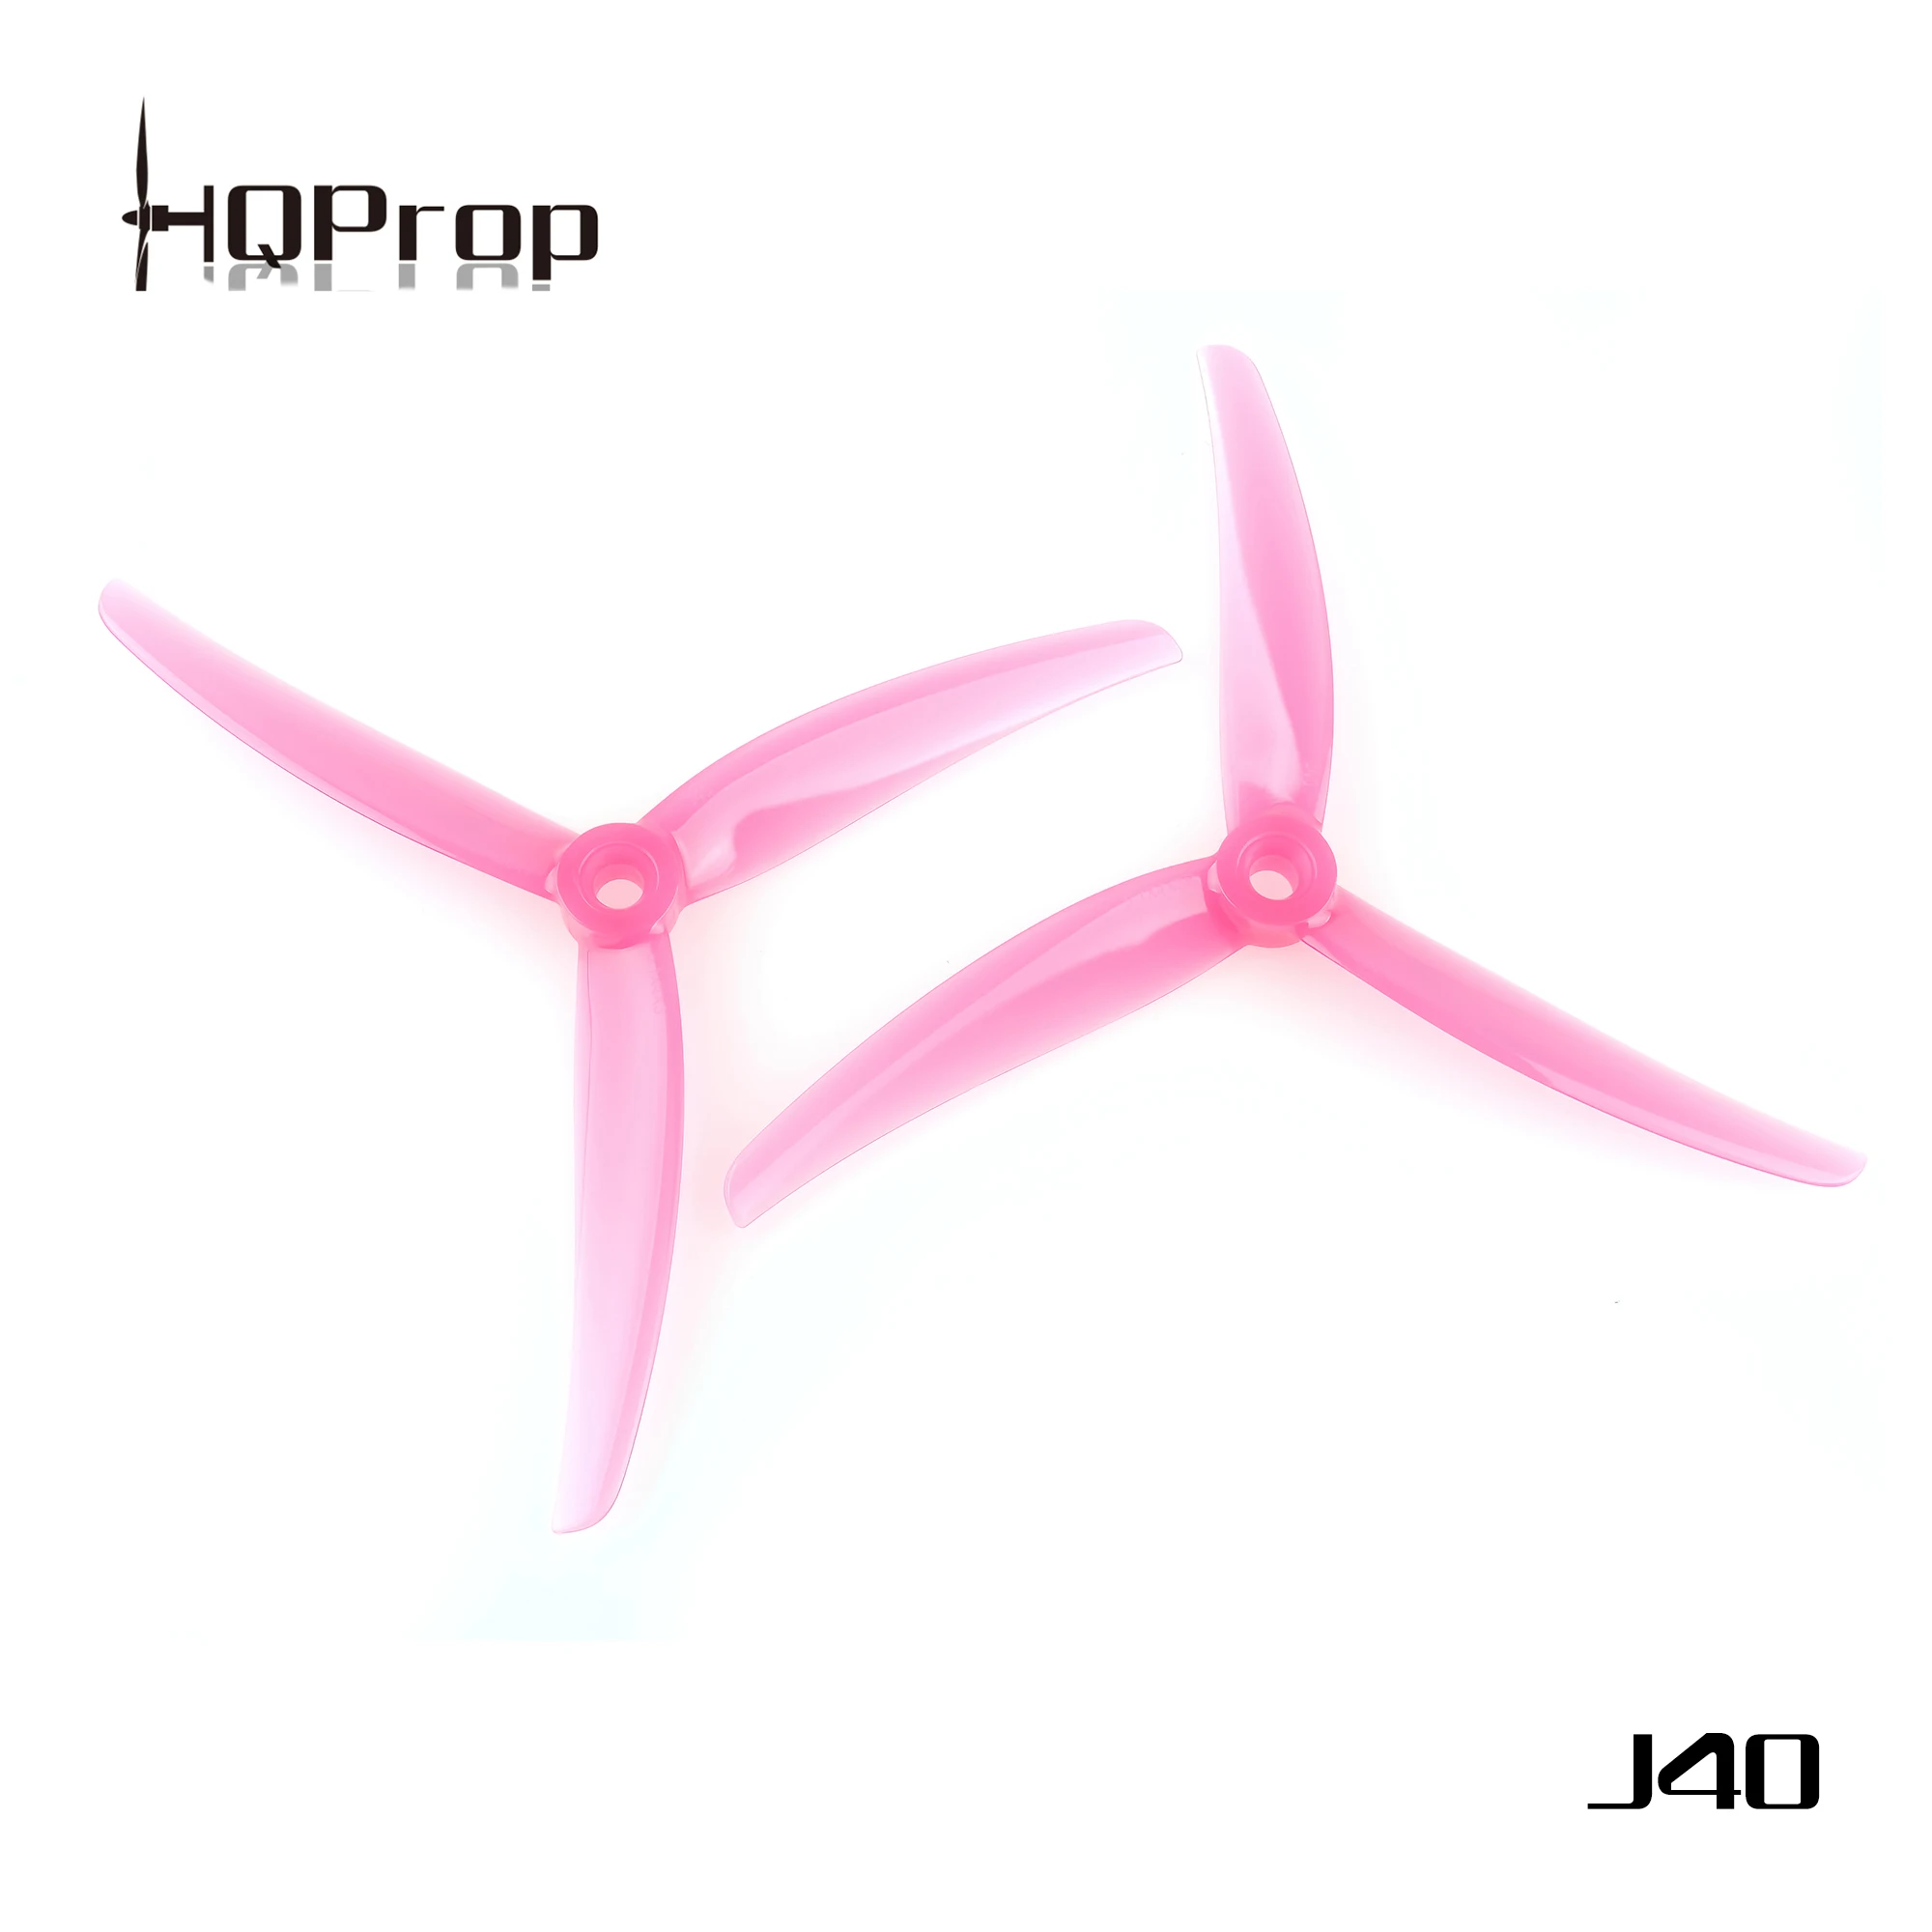 HQprop Juicy Prop J40 5.1x4x3 5143 3-Blade Pink PC Propeller